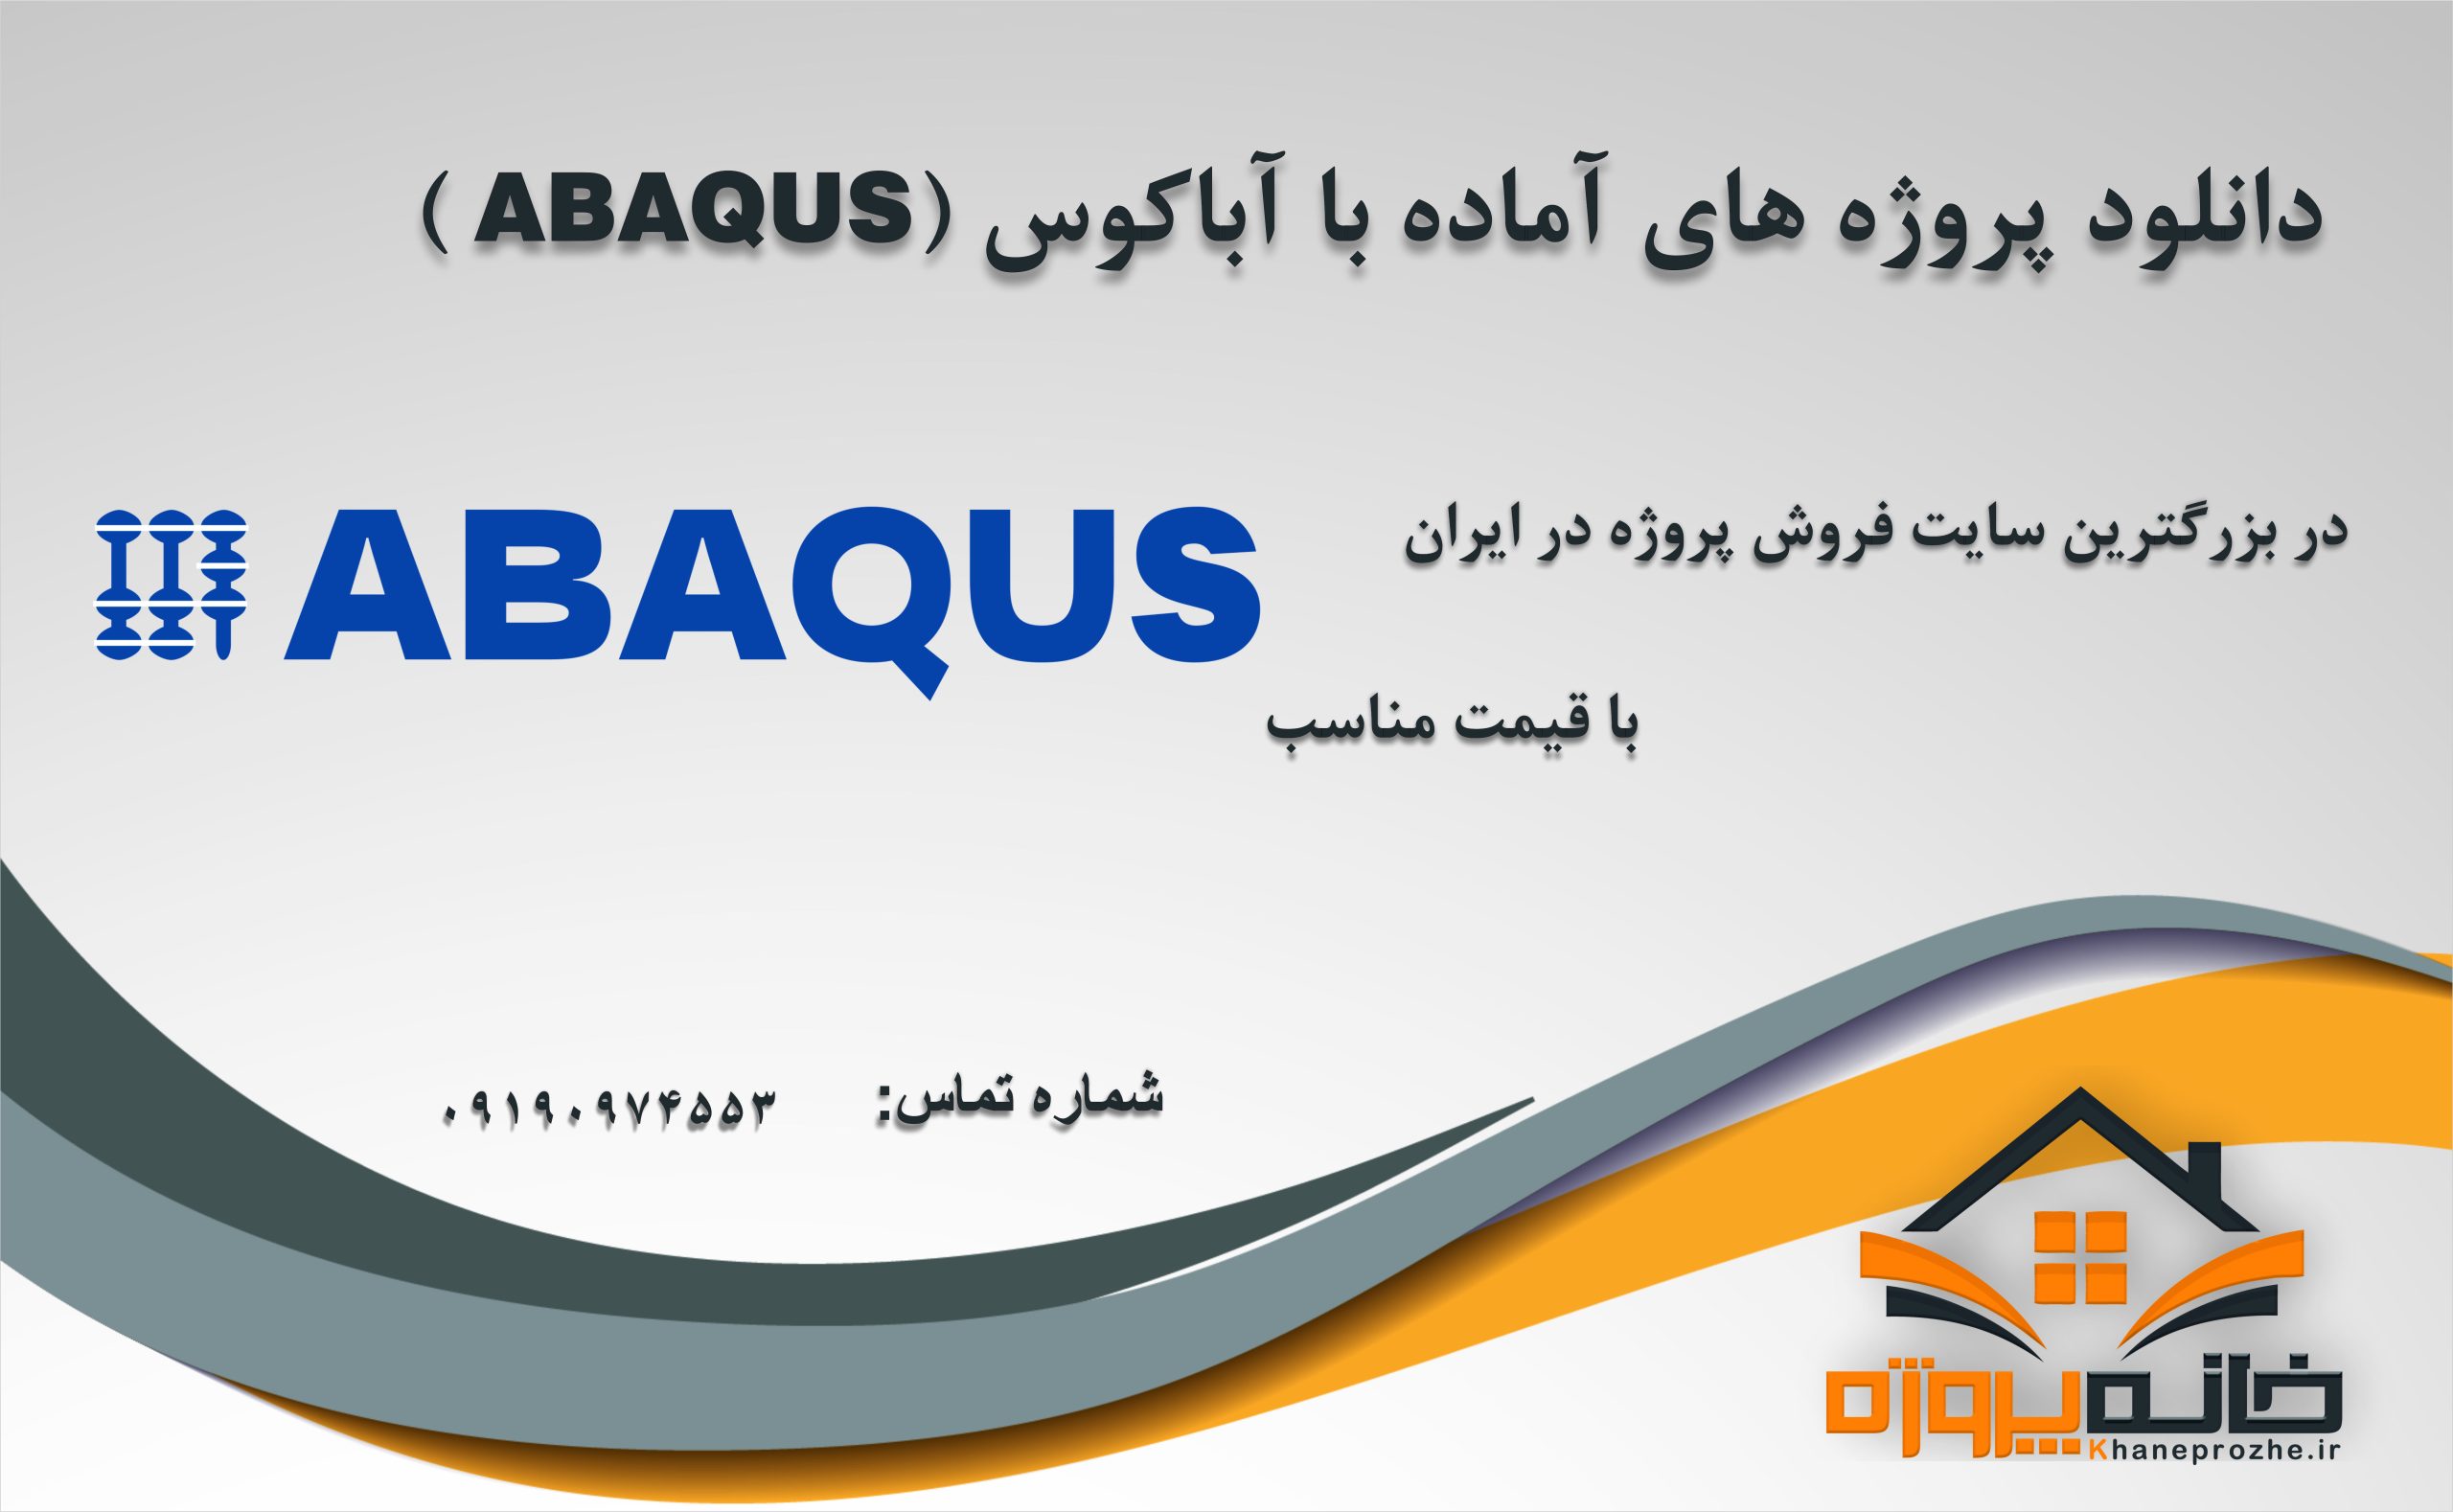 پروژه های آماده با آباکوس (ABAQUS)